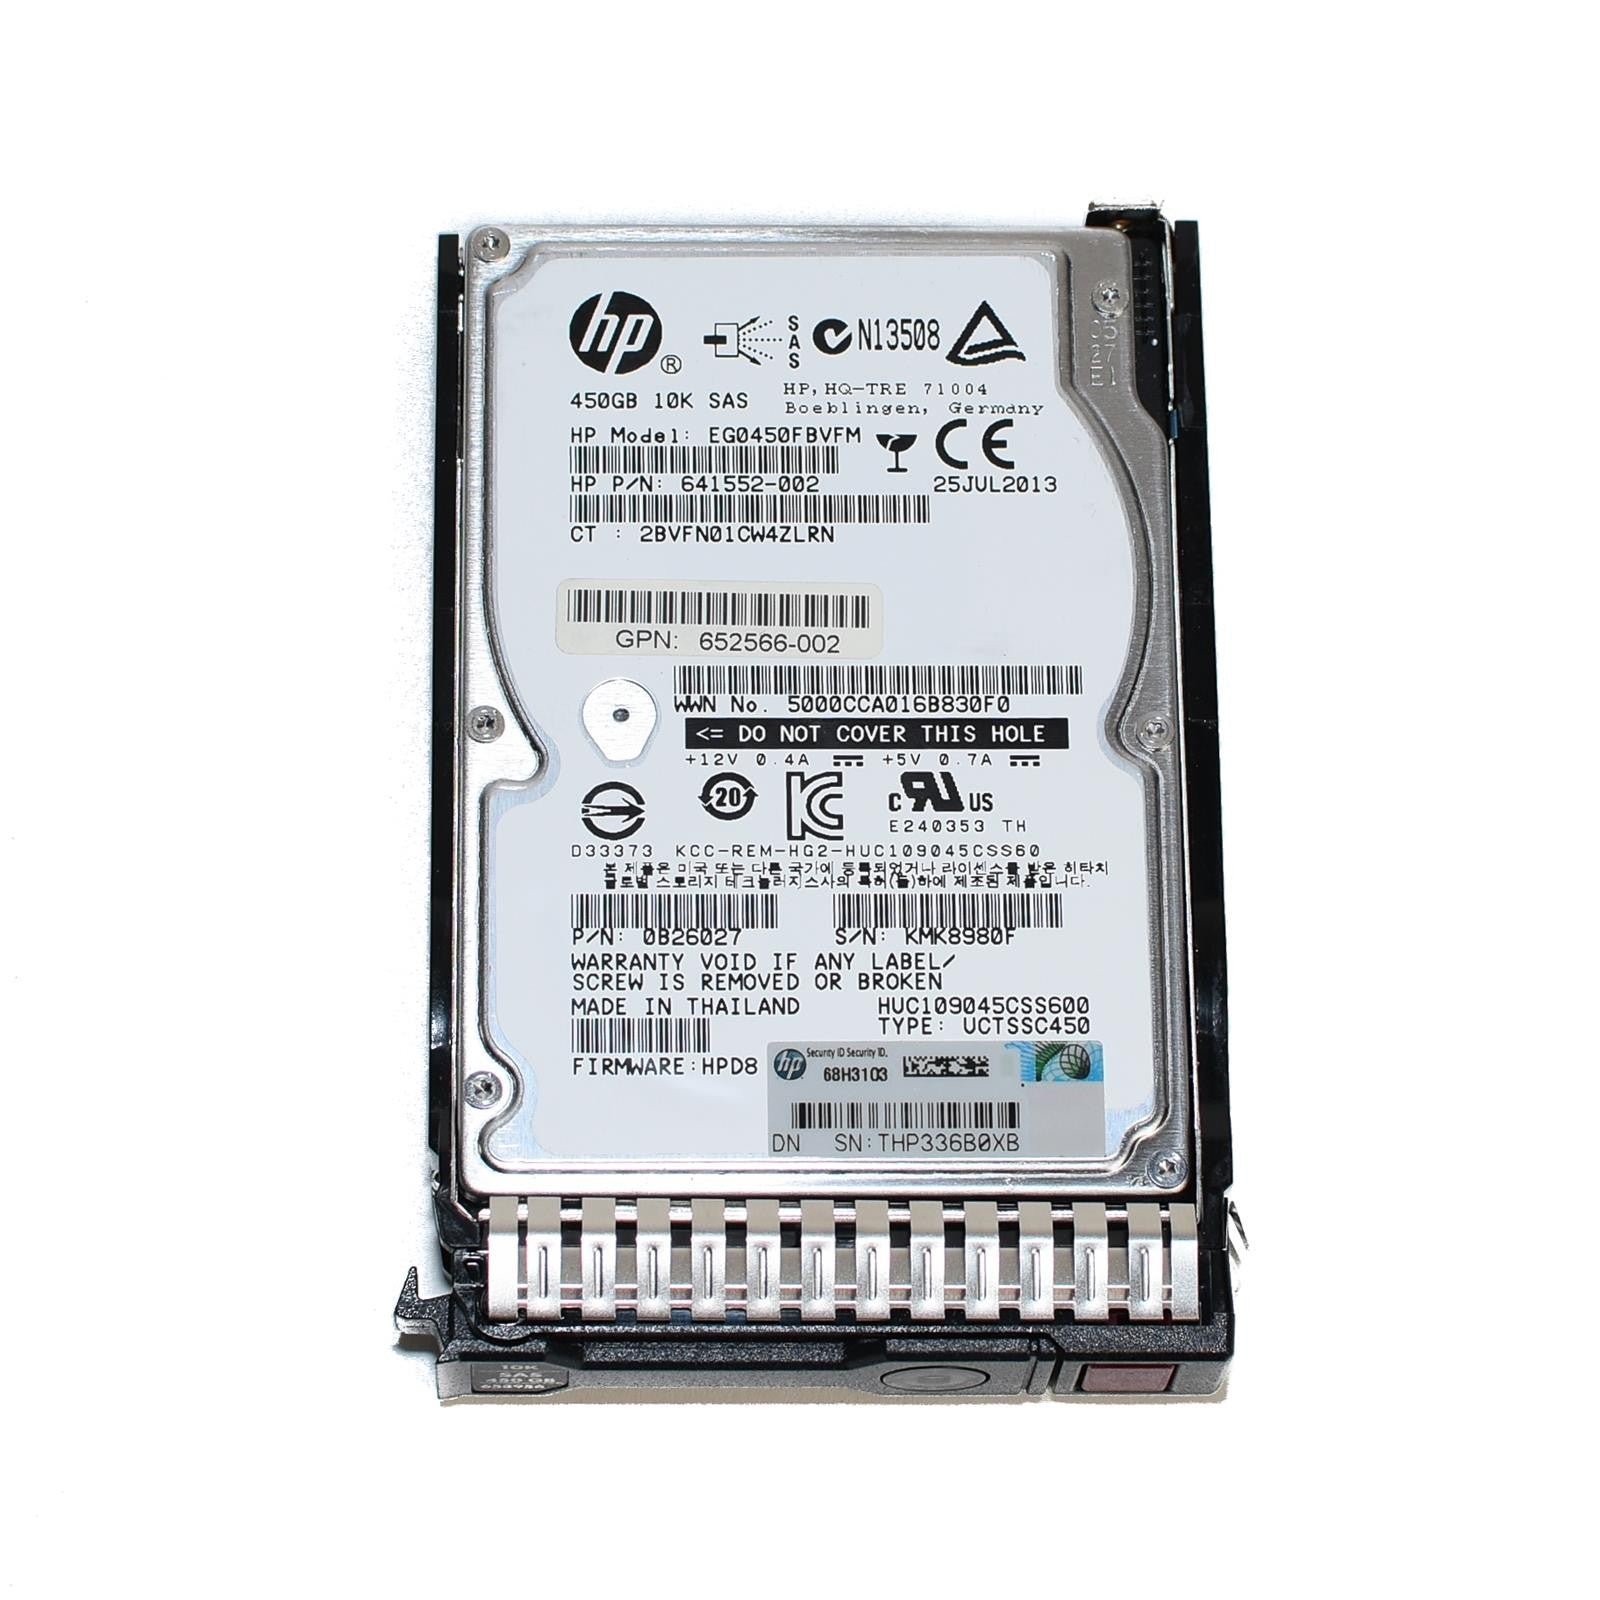 HP 450GB 10K 2.5 SAS G8 G9 653956-001 641552-002 507129-012